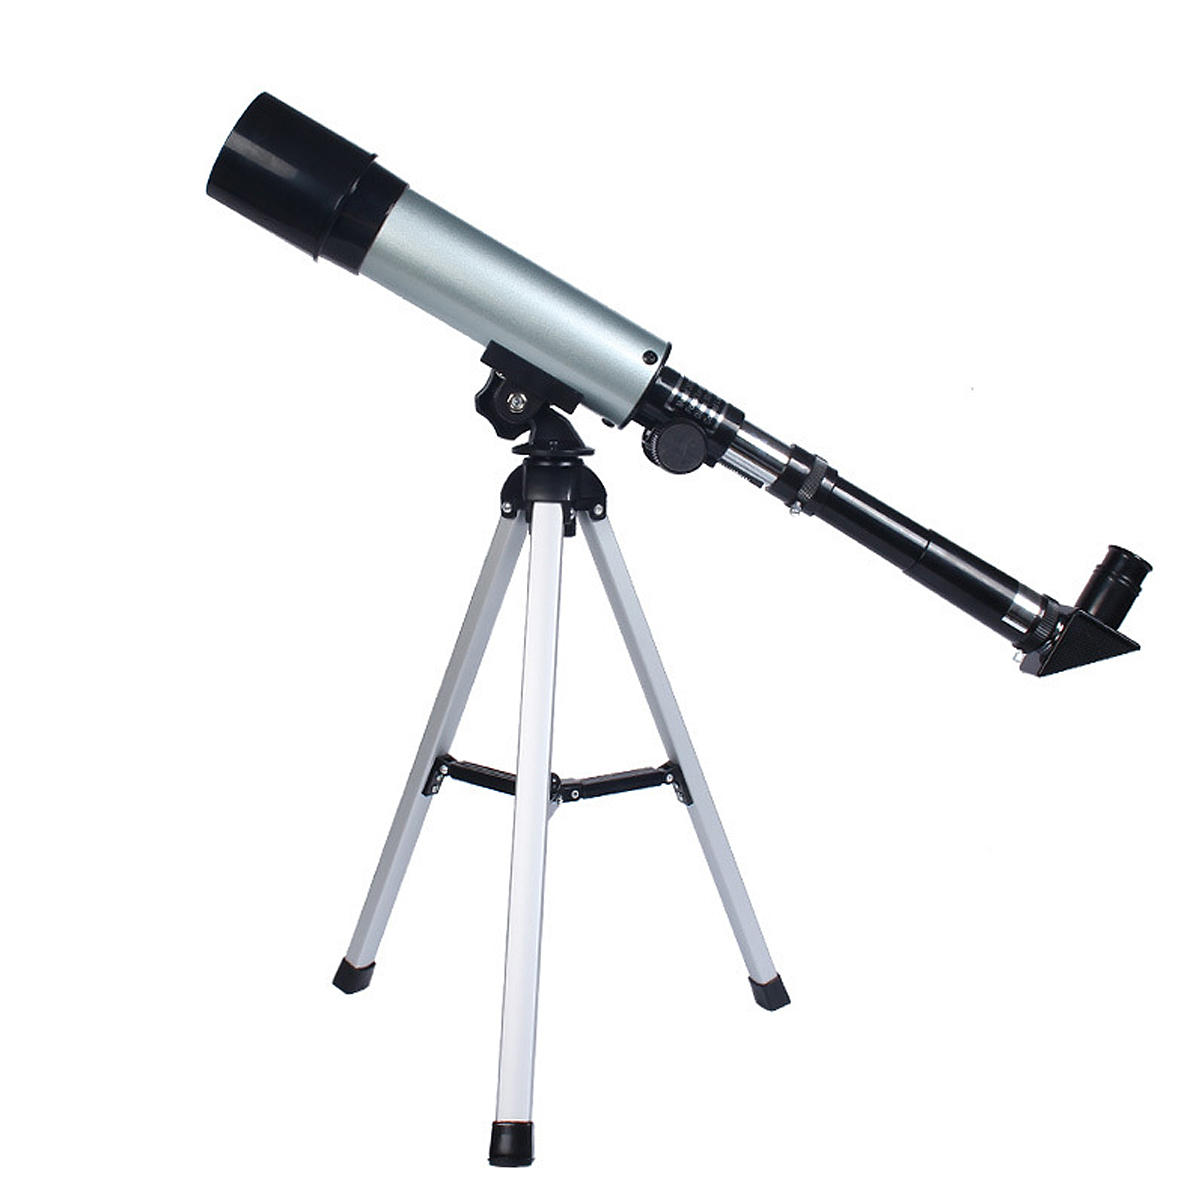 F36050 90X屈折望遠鏡、90°天体鏡、クリアな画像。